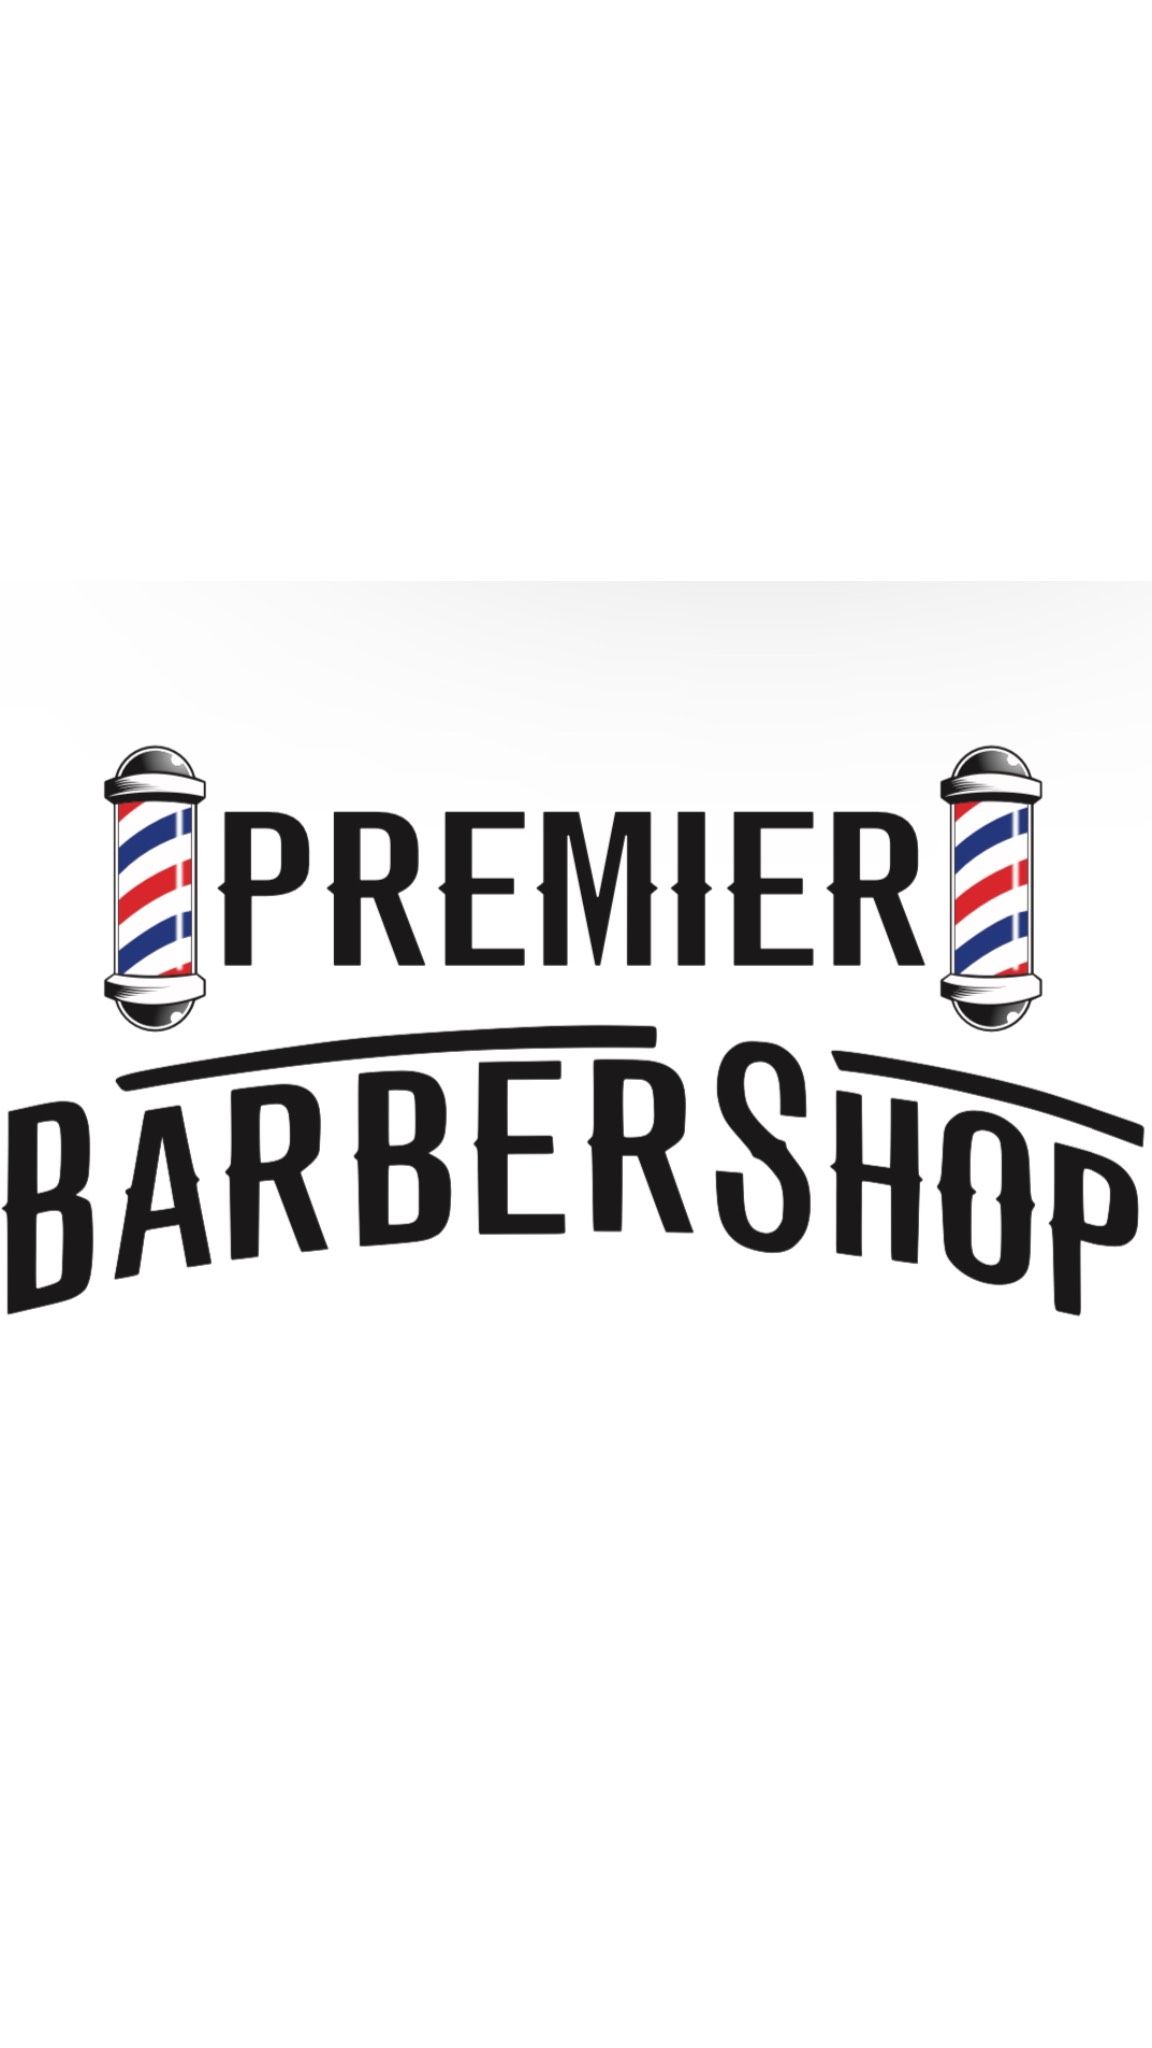 Premier Barbershop, 4996 Hwy 6 N, Houston, 77084